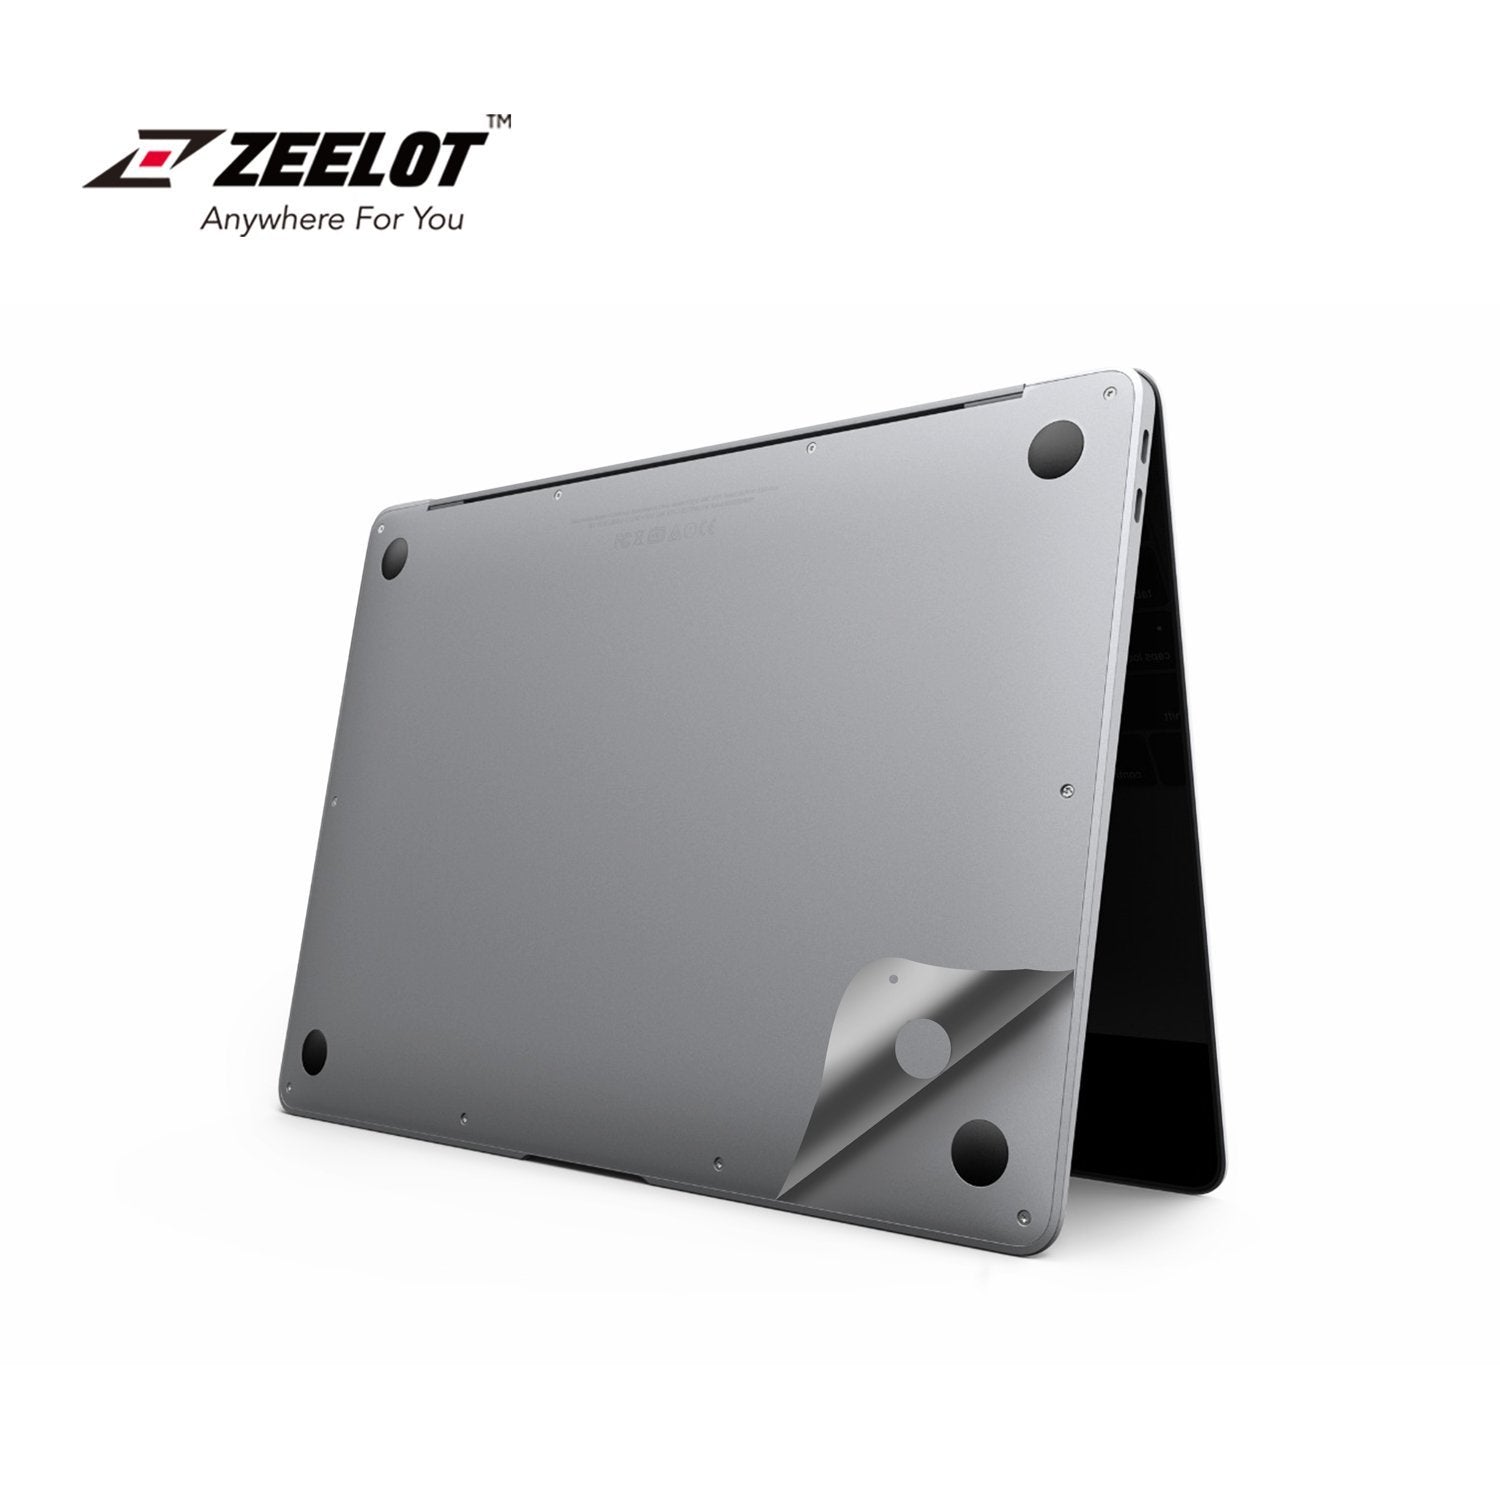 ZEELOT 6 in 1 Full Body Guard for MacBook Air 13"(2020), Silver Default Zeelot 